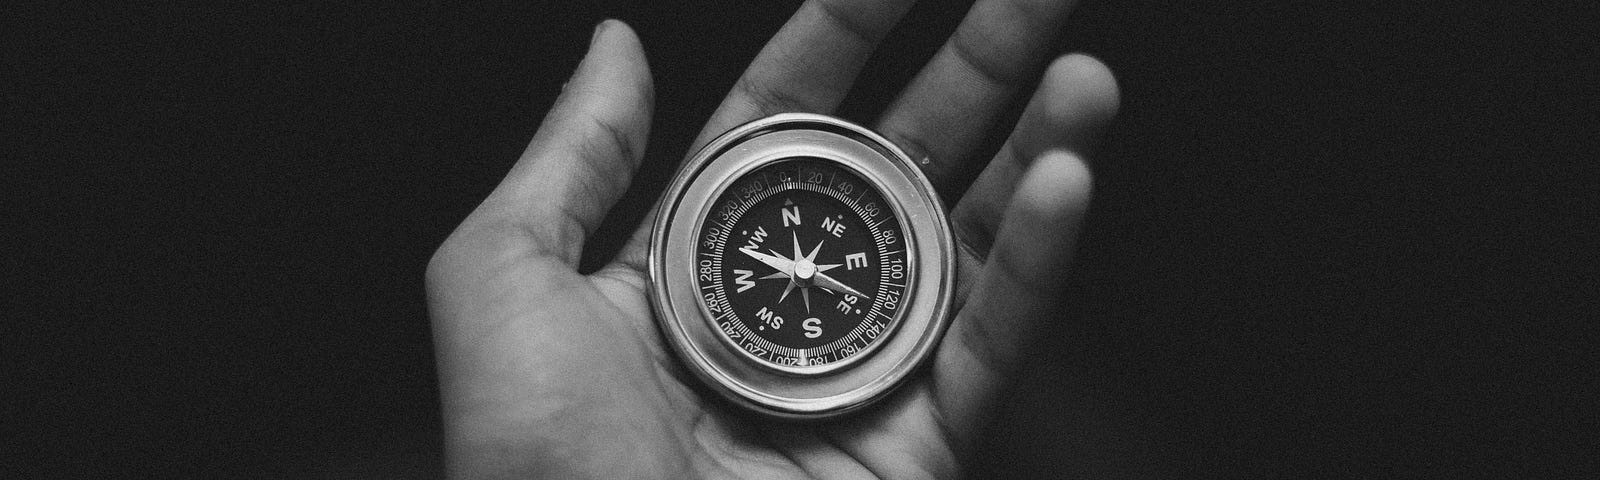 compass on an open palm